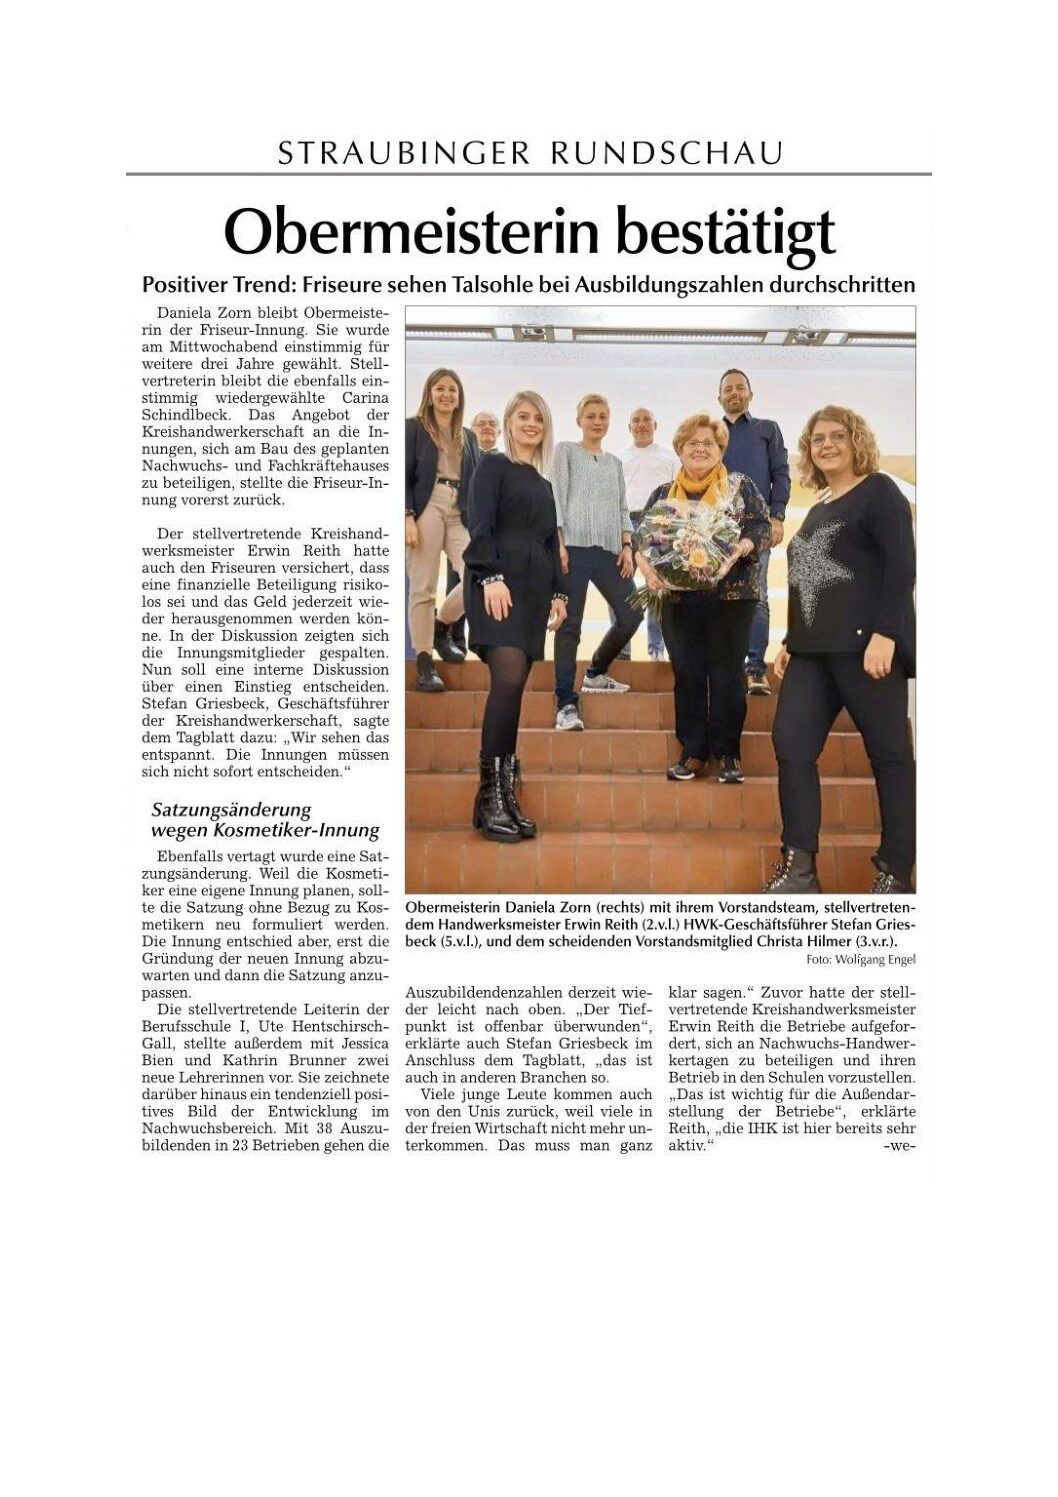 Jahreshauptversammlung der Friseur-Innung Straubing: Obermeisterin Daniela Zorn bestätigt